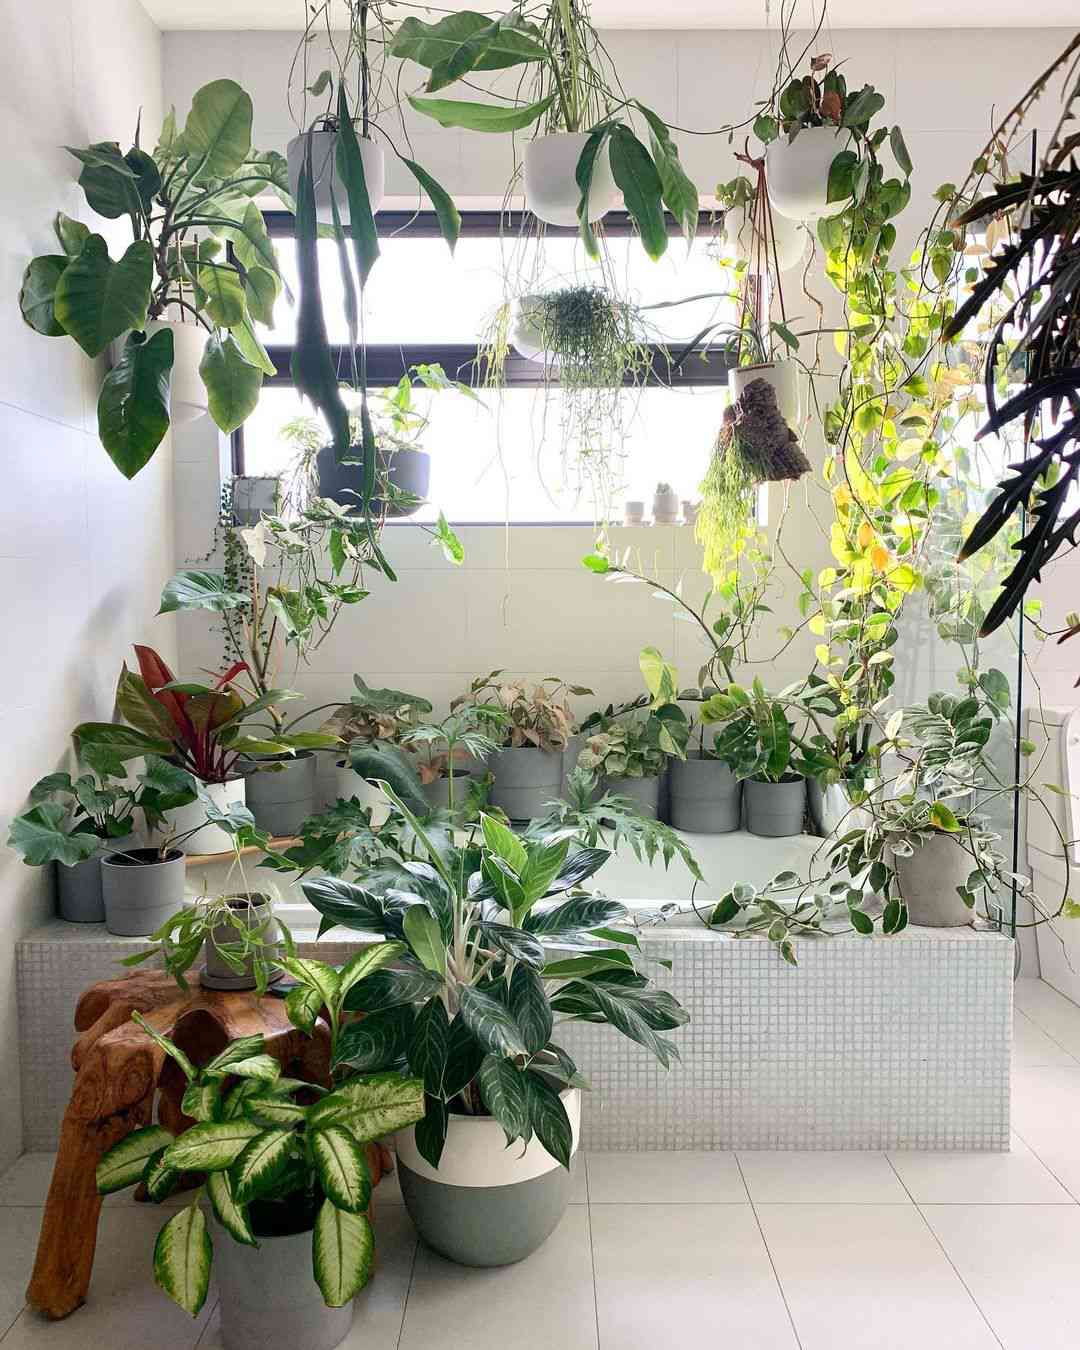 العديد من النباتات في الحمام